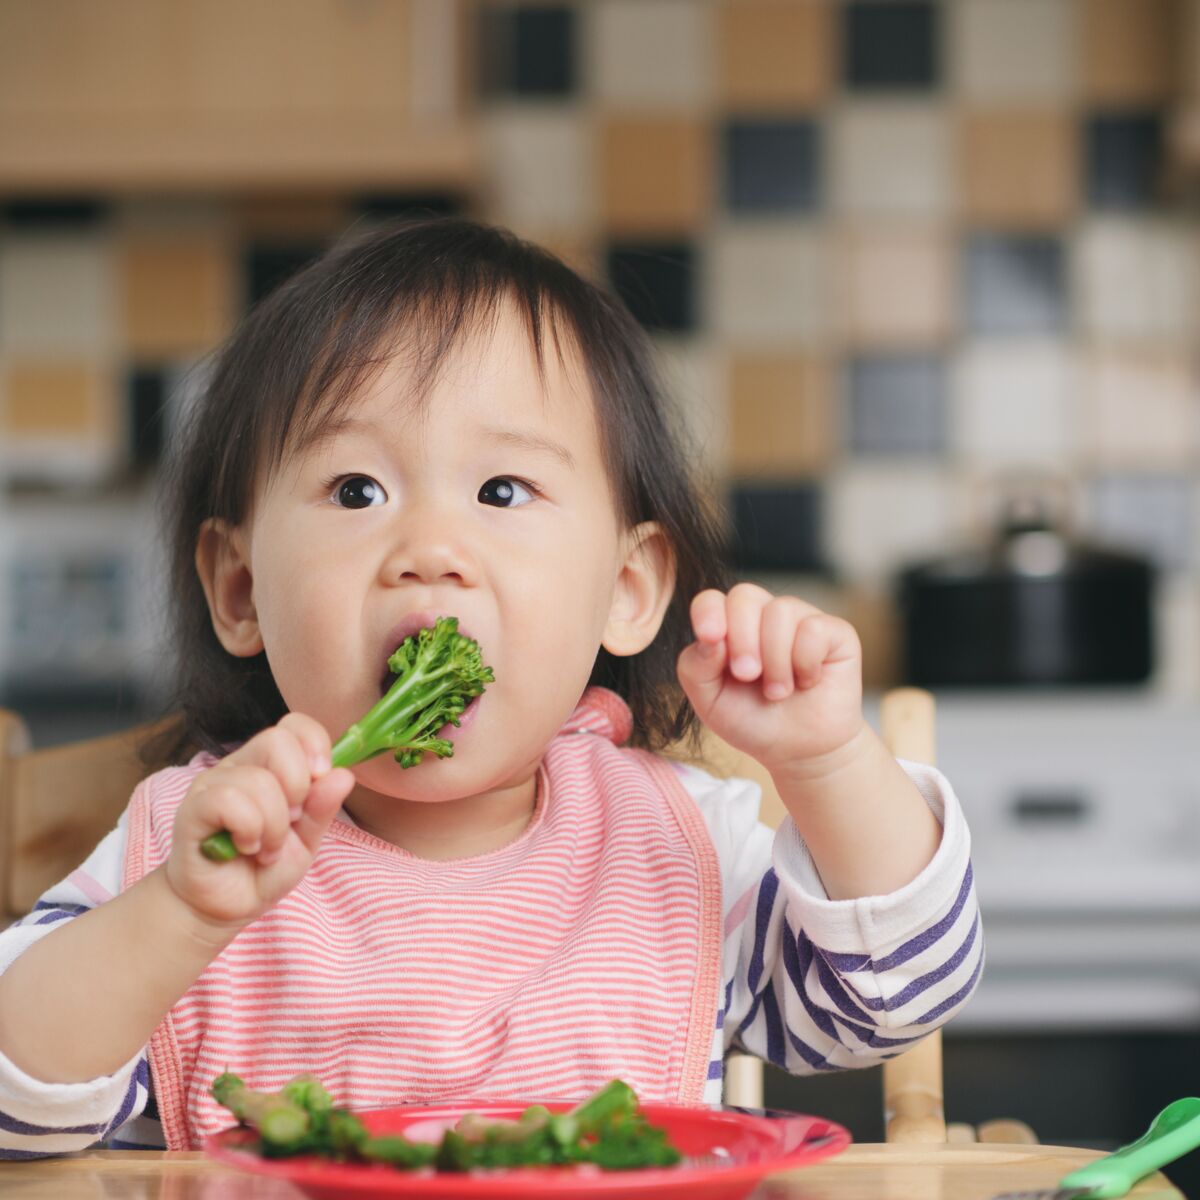 Dme Quelles Precautions Prendre Lorsque L On Debute Une Diversification Alimentaire Menee Par L Enfant Femme Actuelle Le Mag